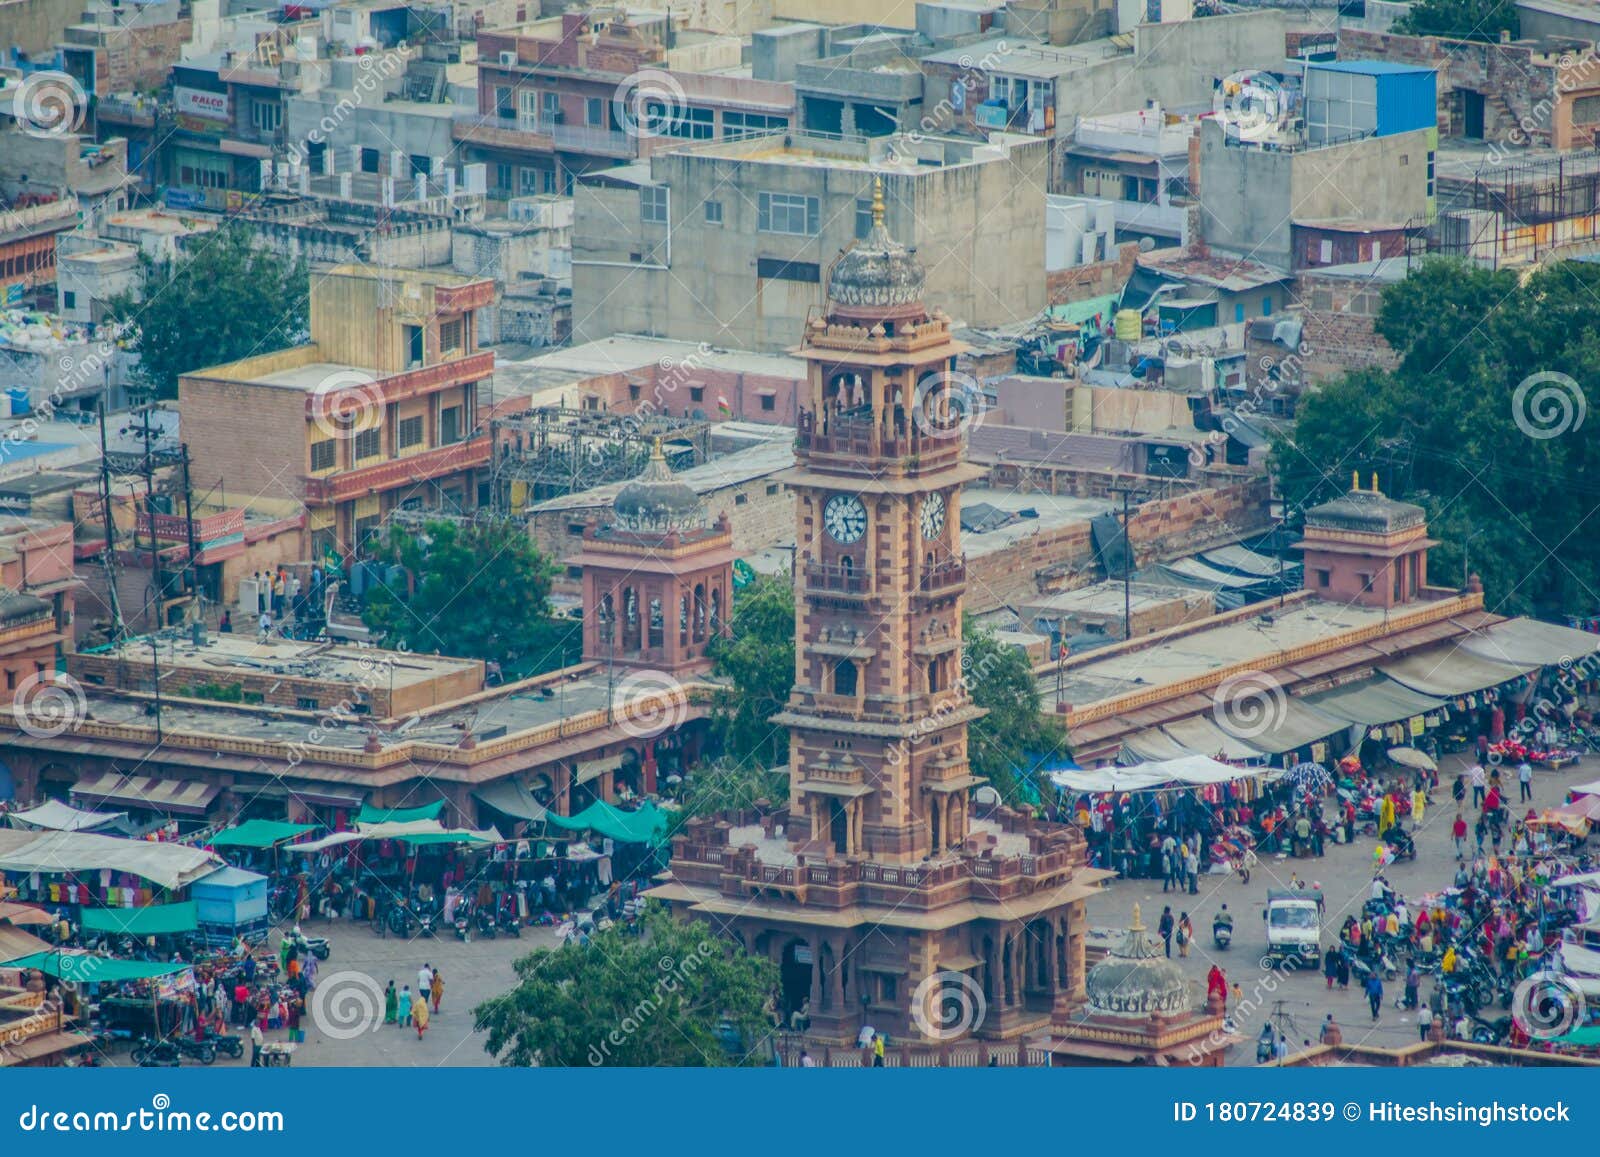 ghanta ghar clock tower & sadar market jodhpur rajasthan